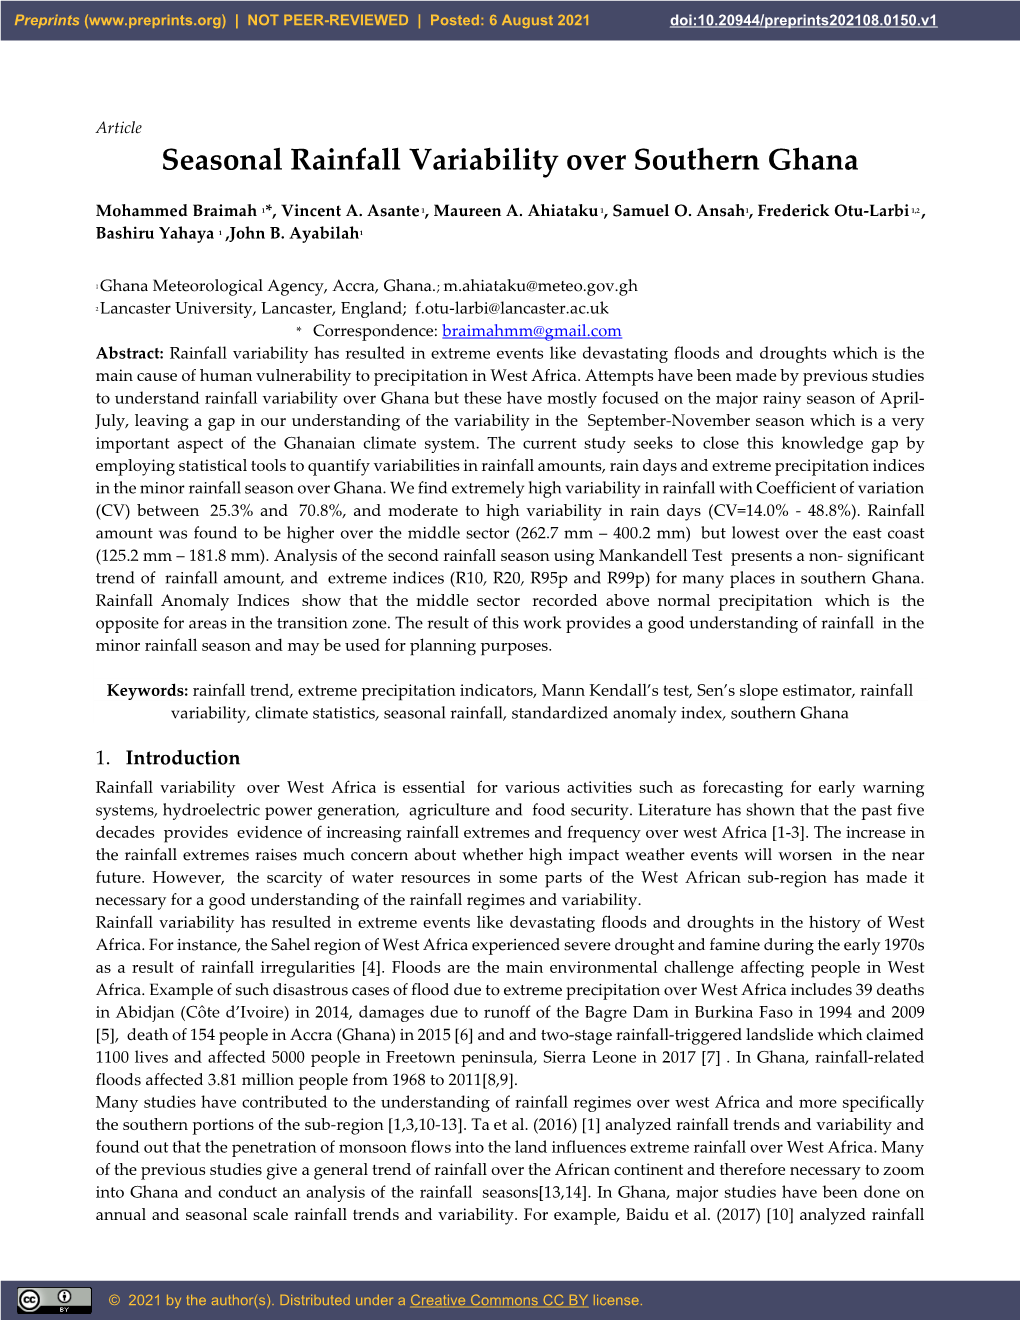 Minor Seanonal Rainfall Variability Over Southern Ghana